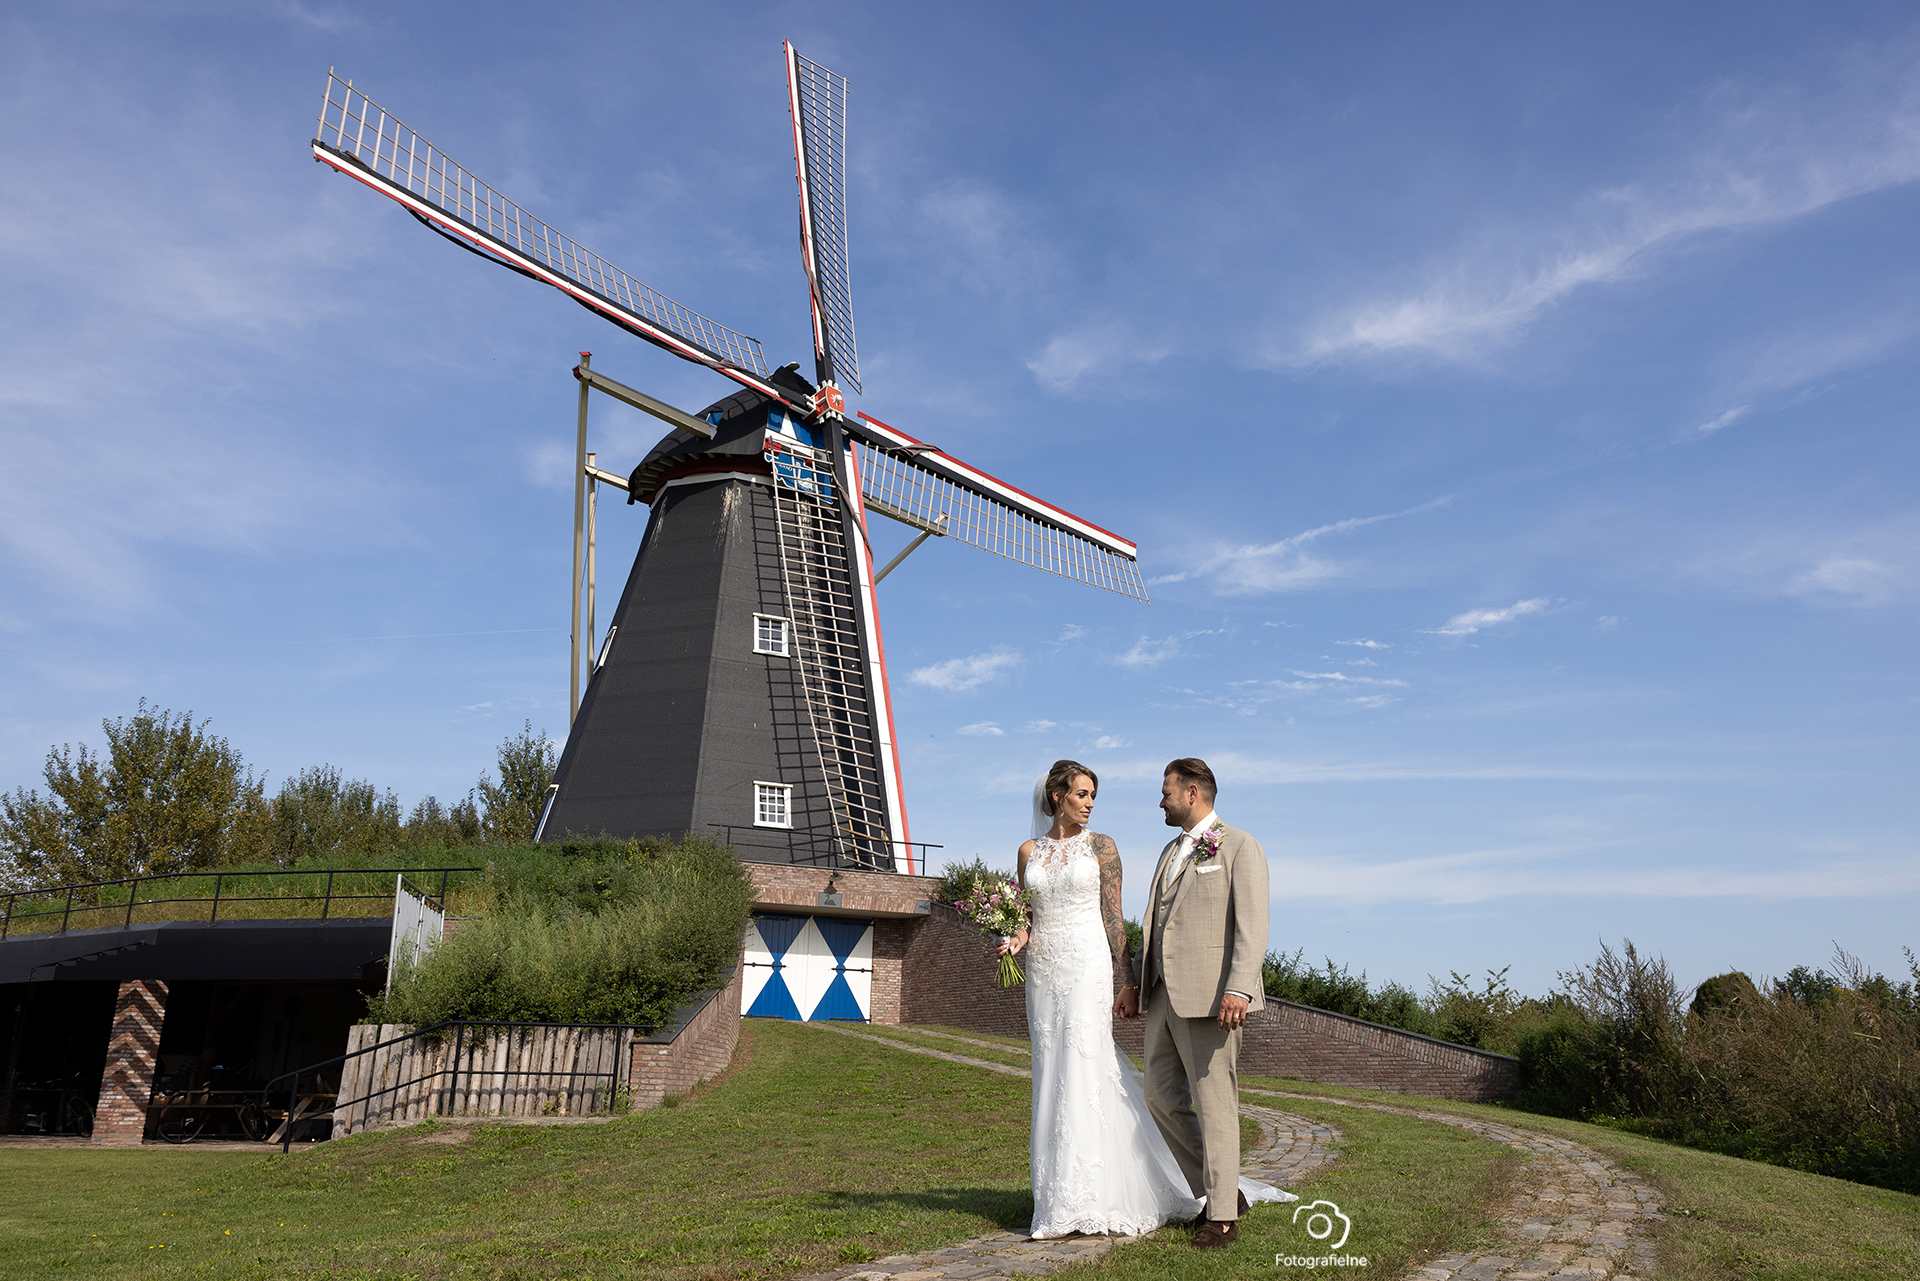 Fotografie Ine huwelijk stadshuis Den Bosch trouwfotograaf Boekel brabant fotograaf Boerdonk 5